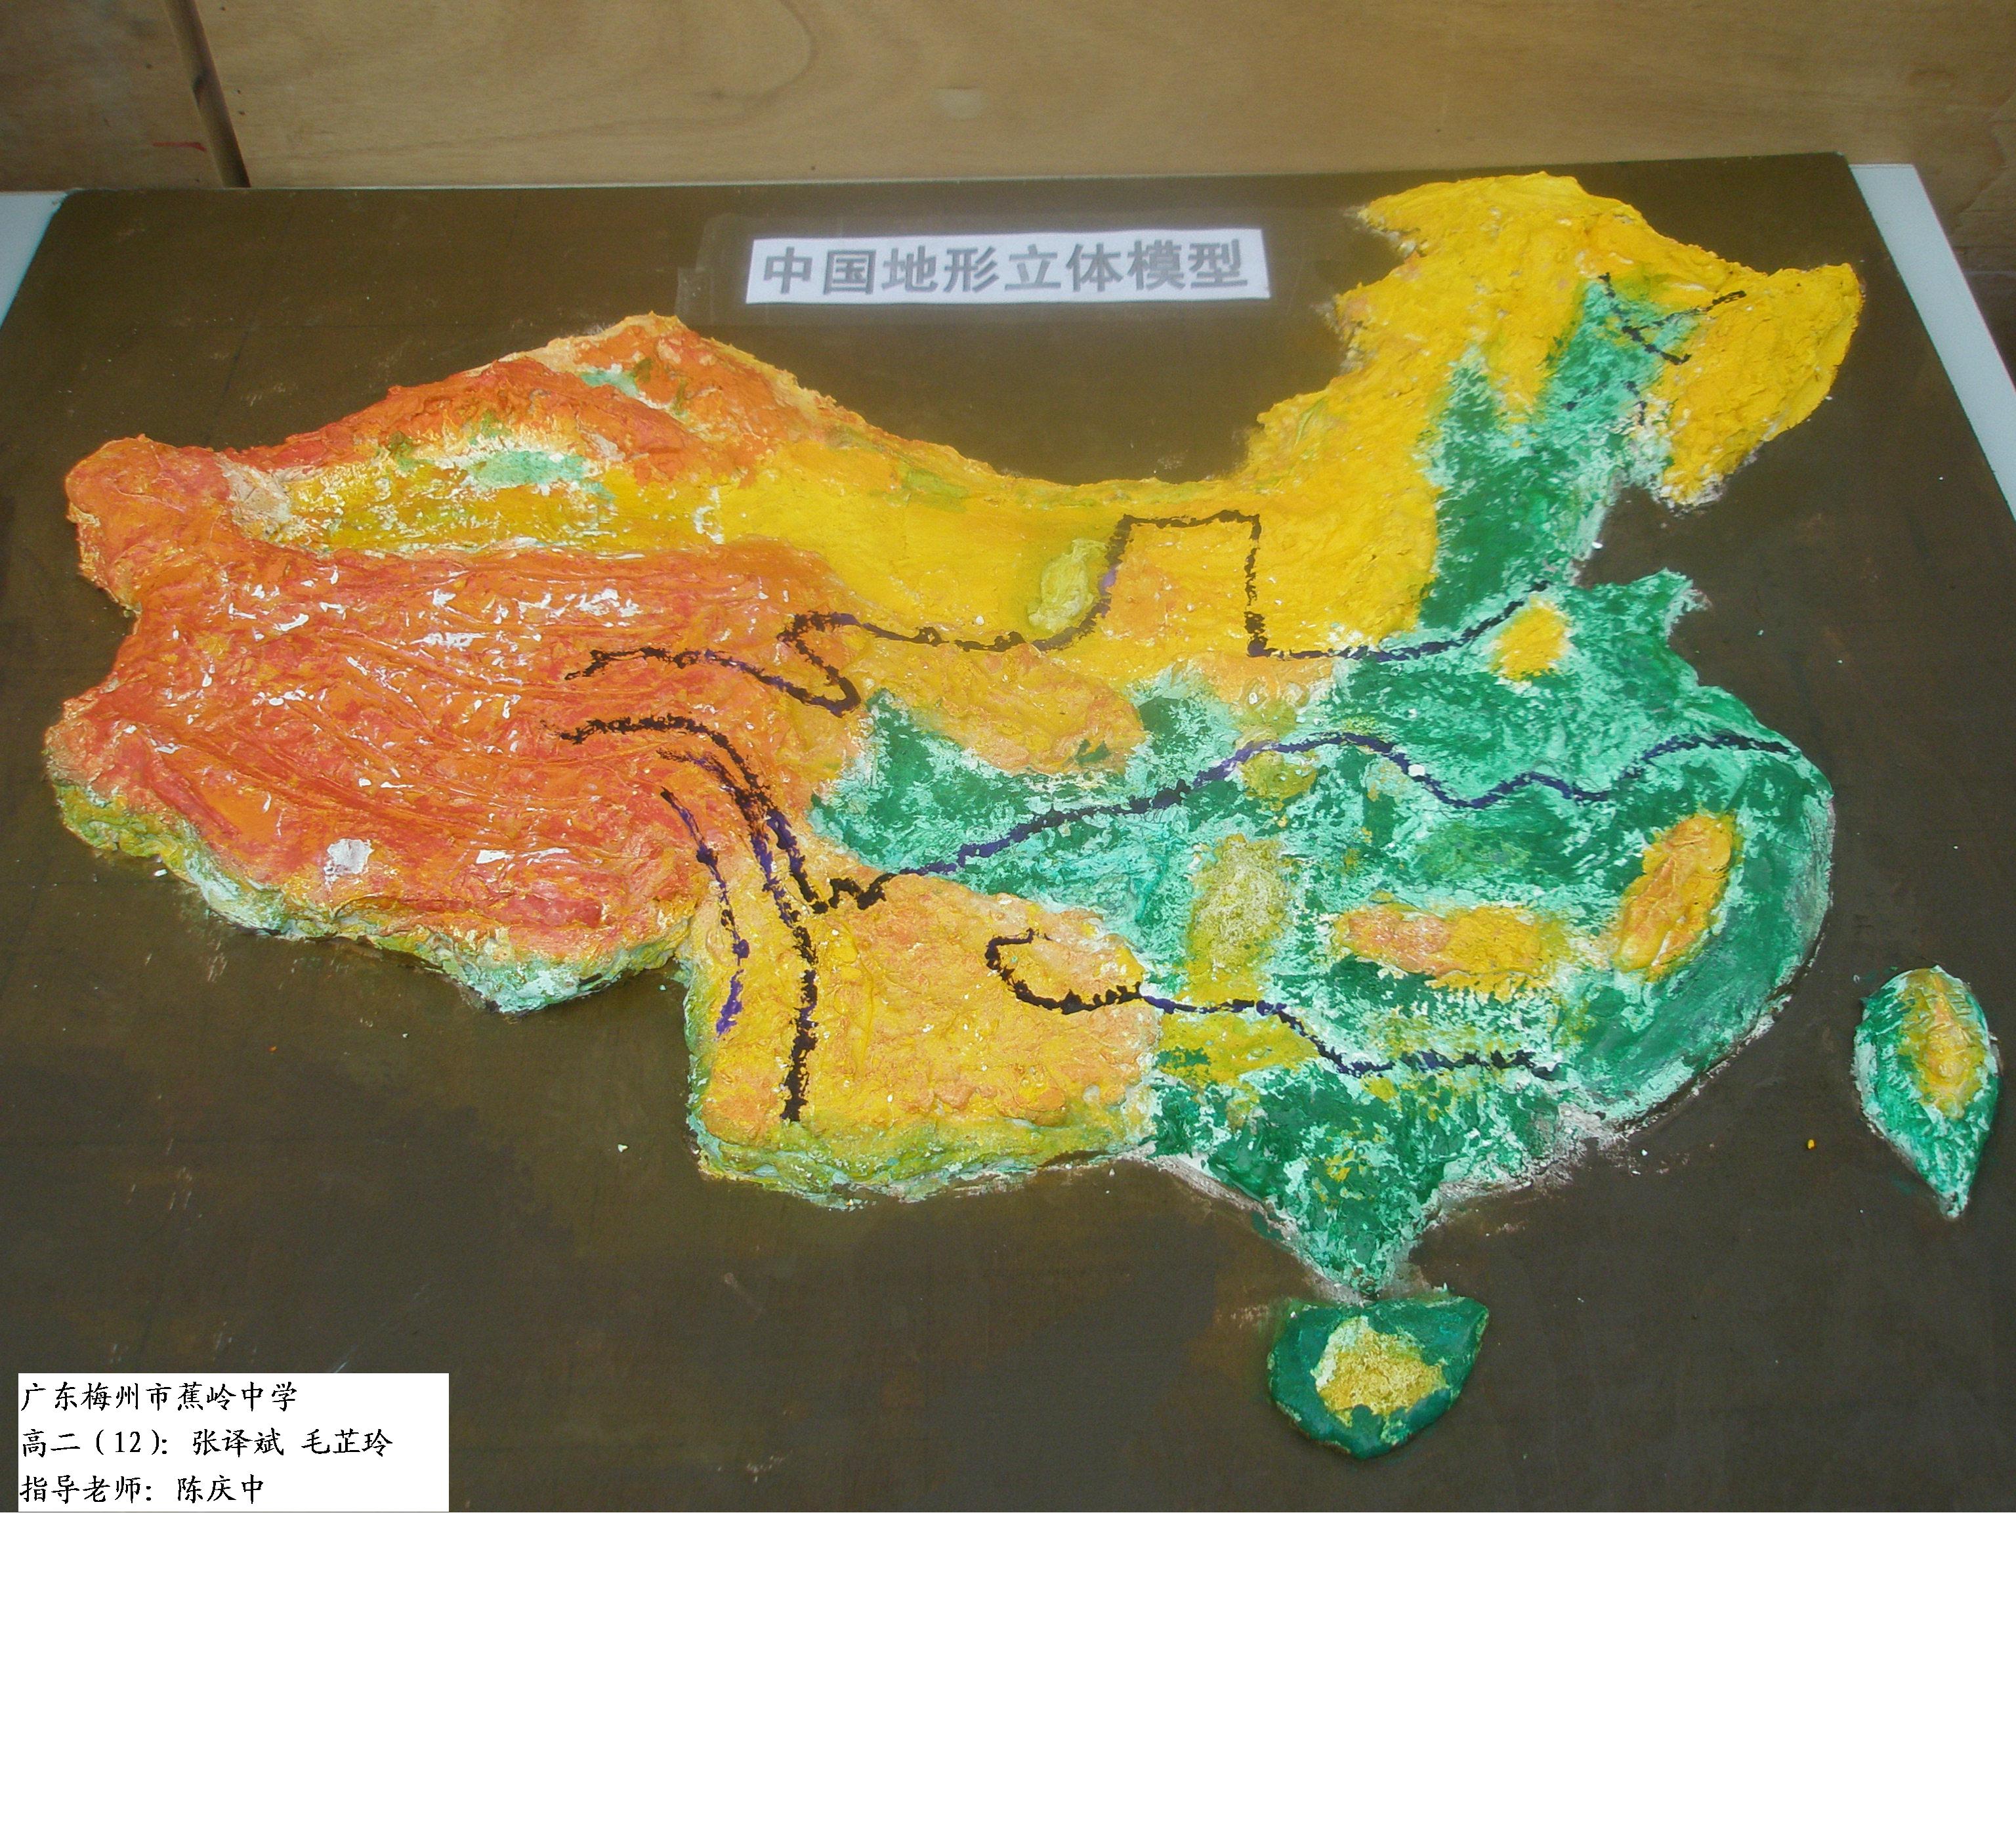 中国地形立体模型-2(图)